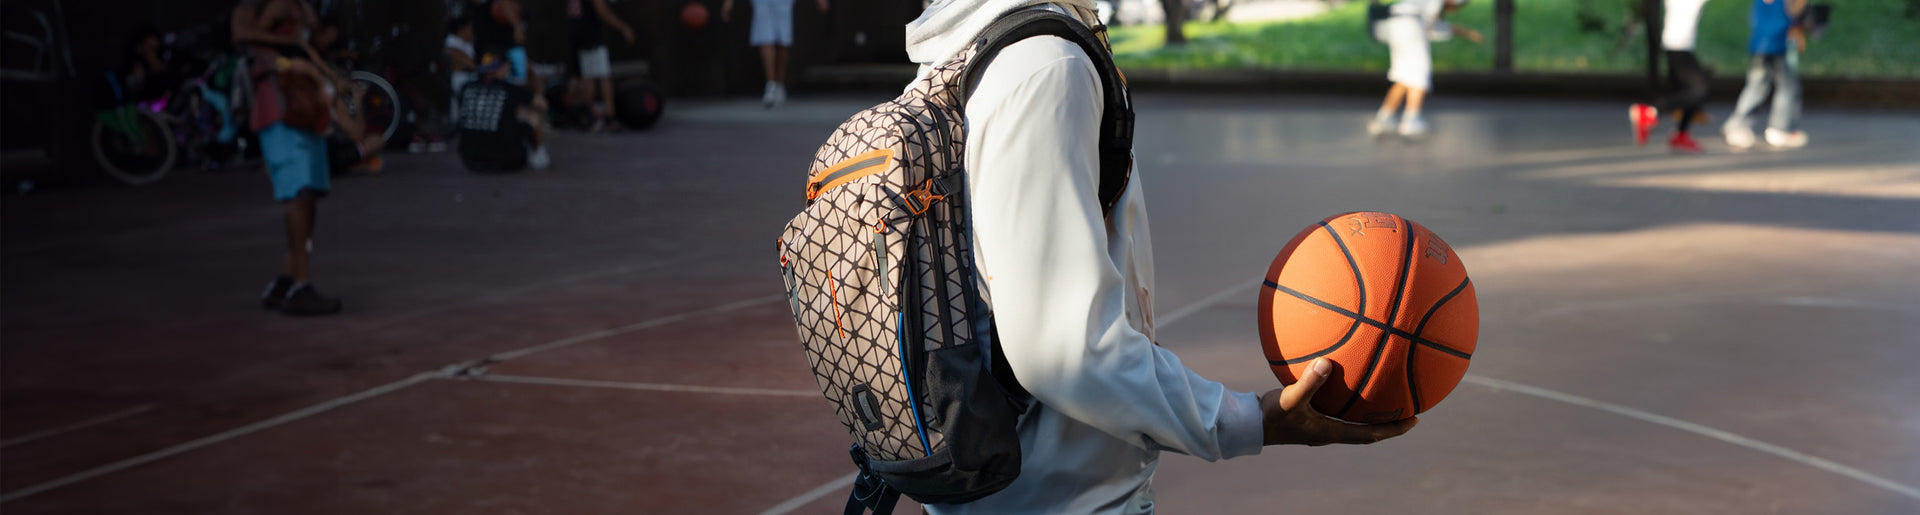 Outdoor Backpacks